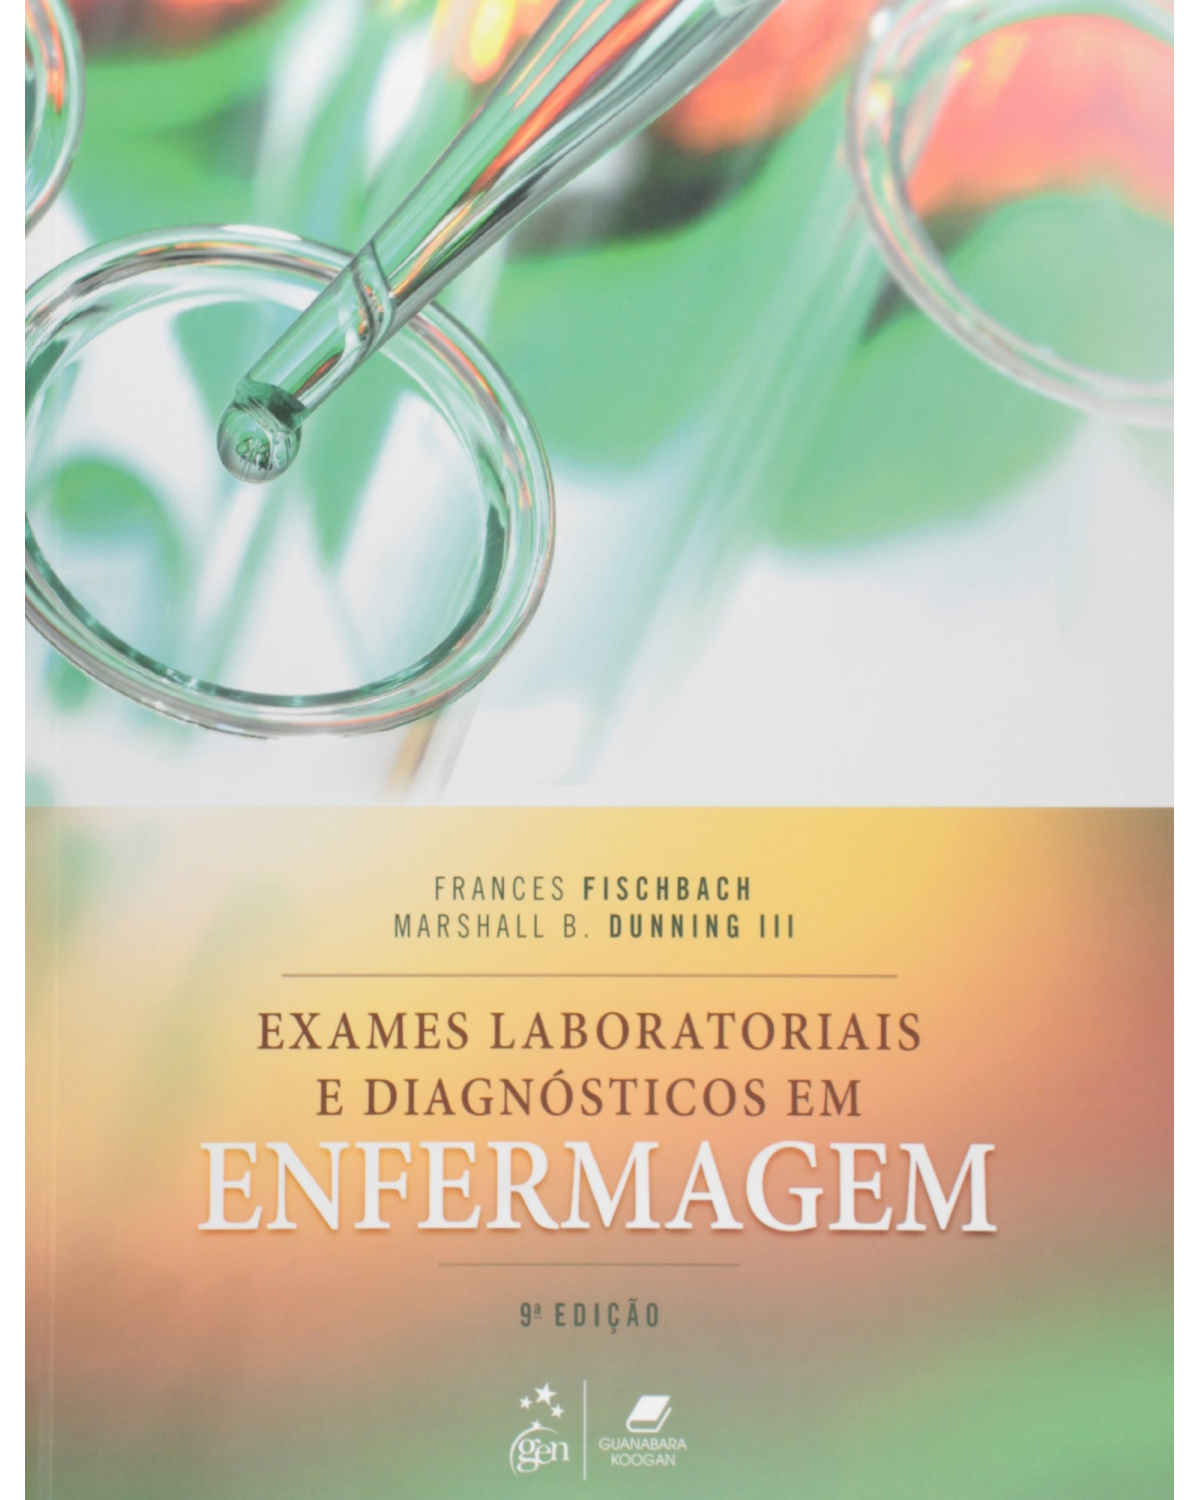 Exames laboratoriais e diagnósticos em enfermagem - 9ª Edição | 2016